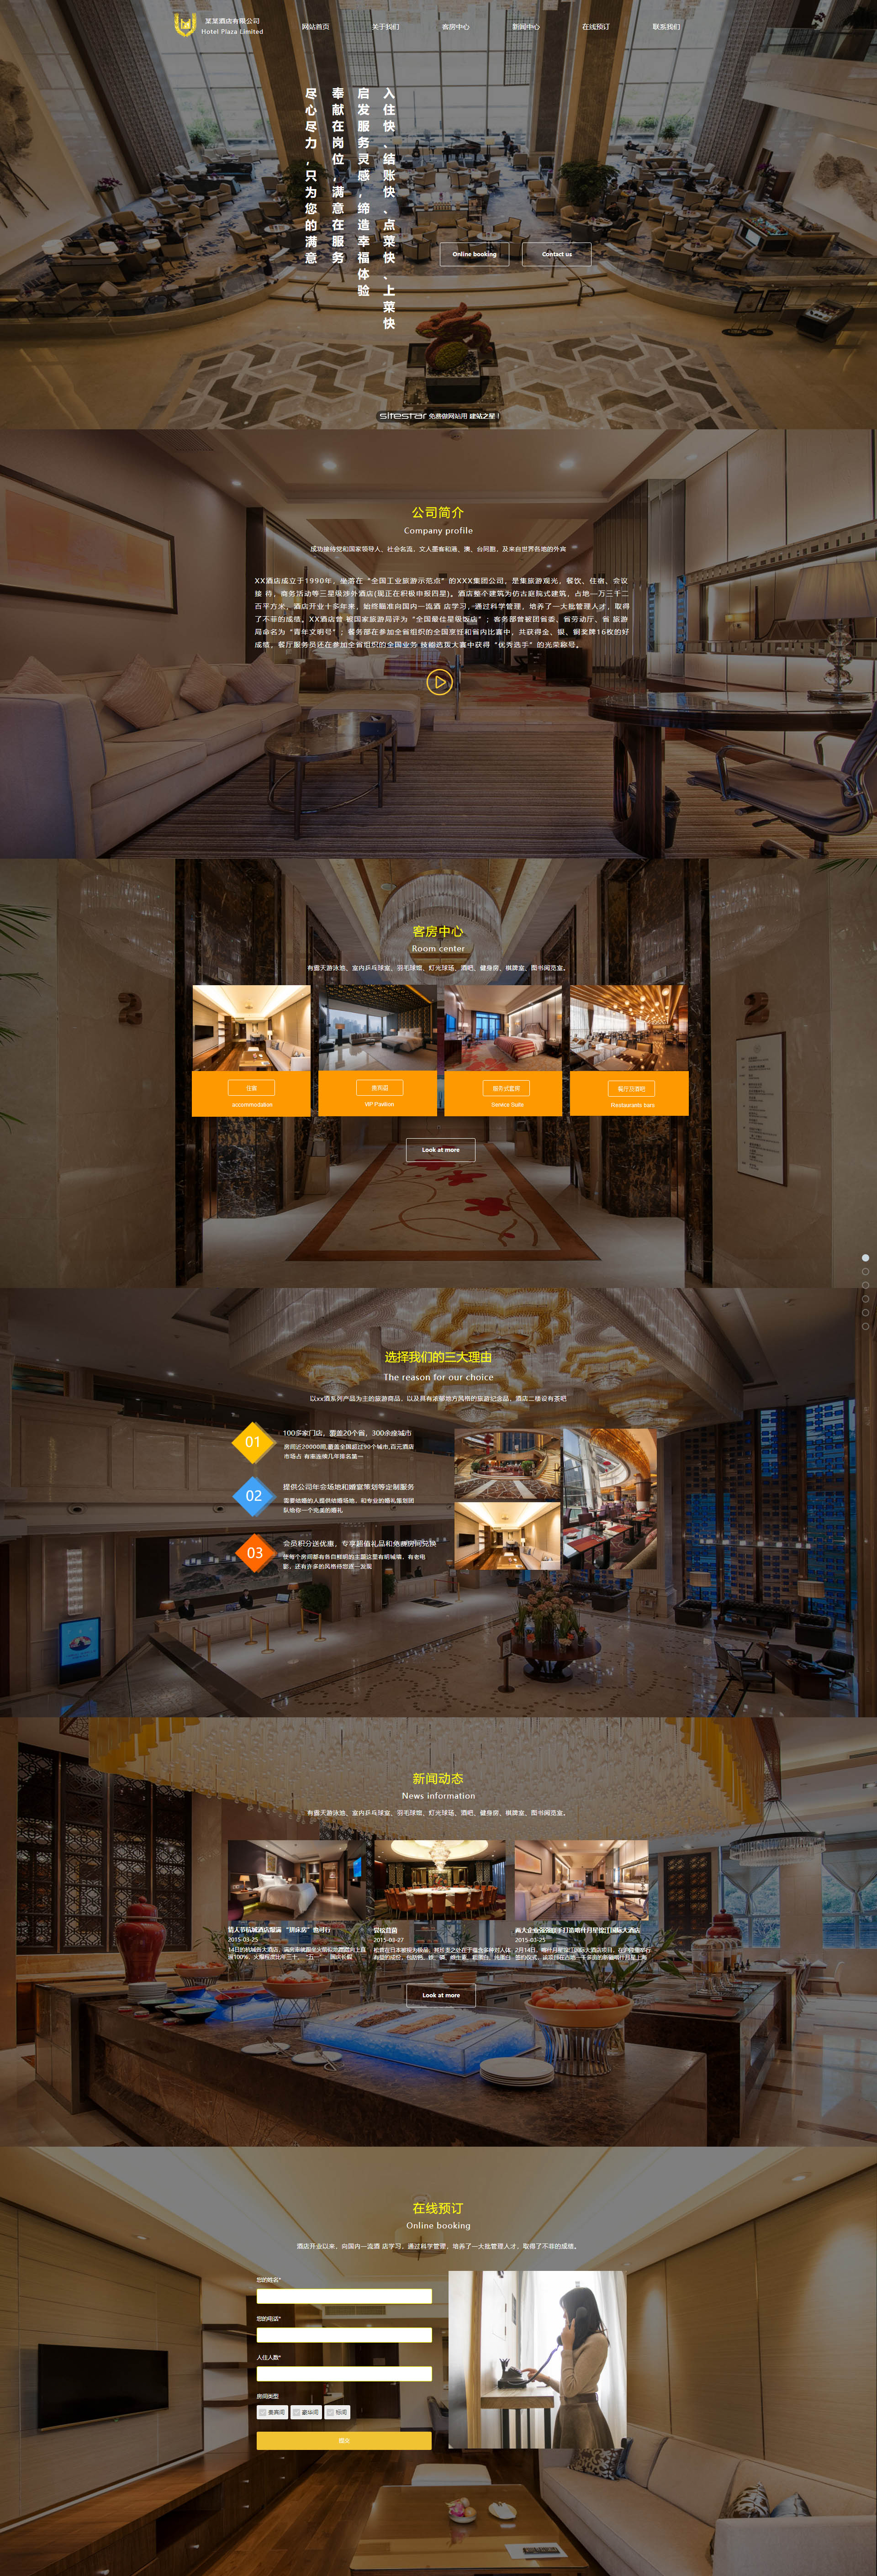 企业网站精美模板-hotels-1108309